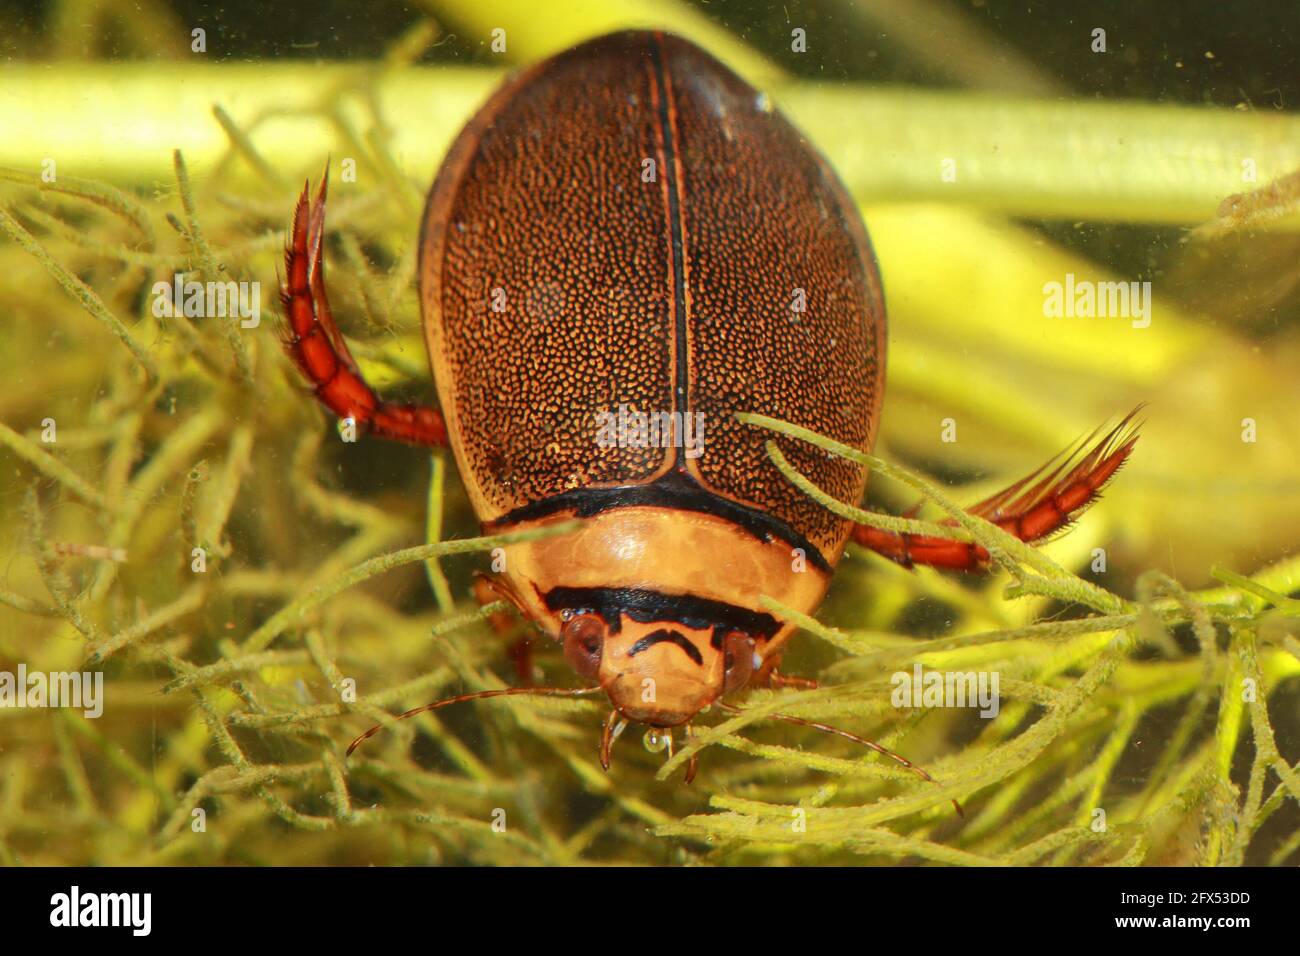 Male of diving beetle (Graphoderus bilineatus) in natural habitat Stock Photo